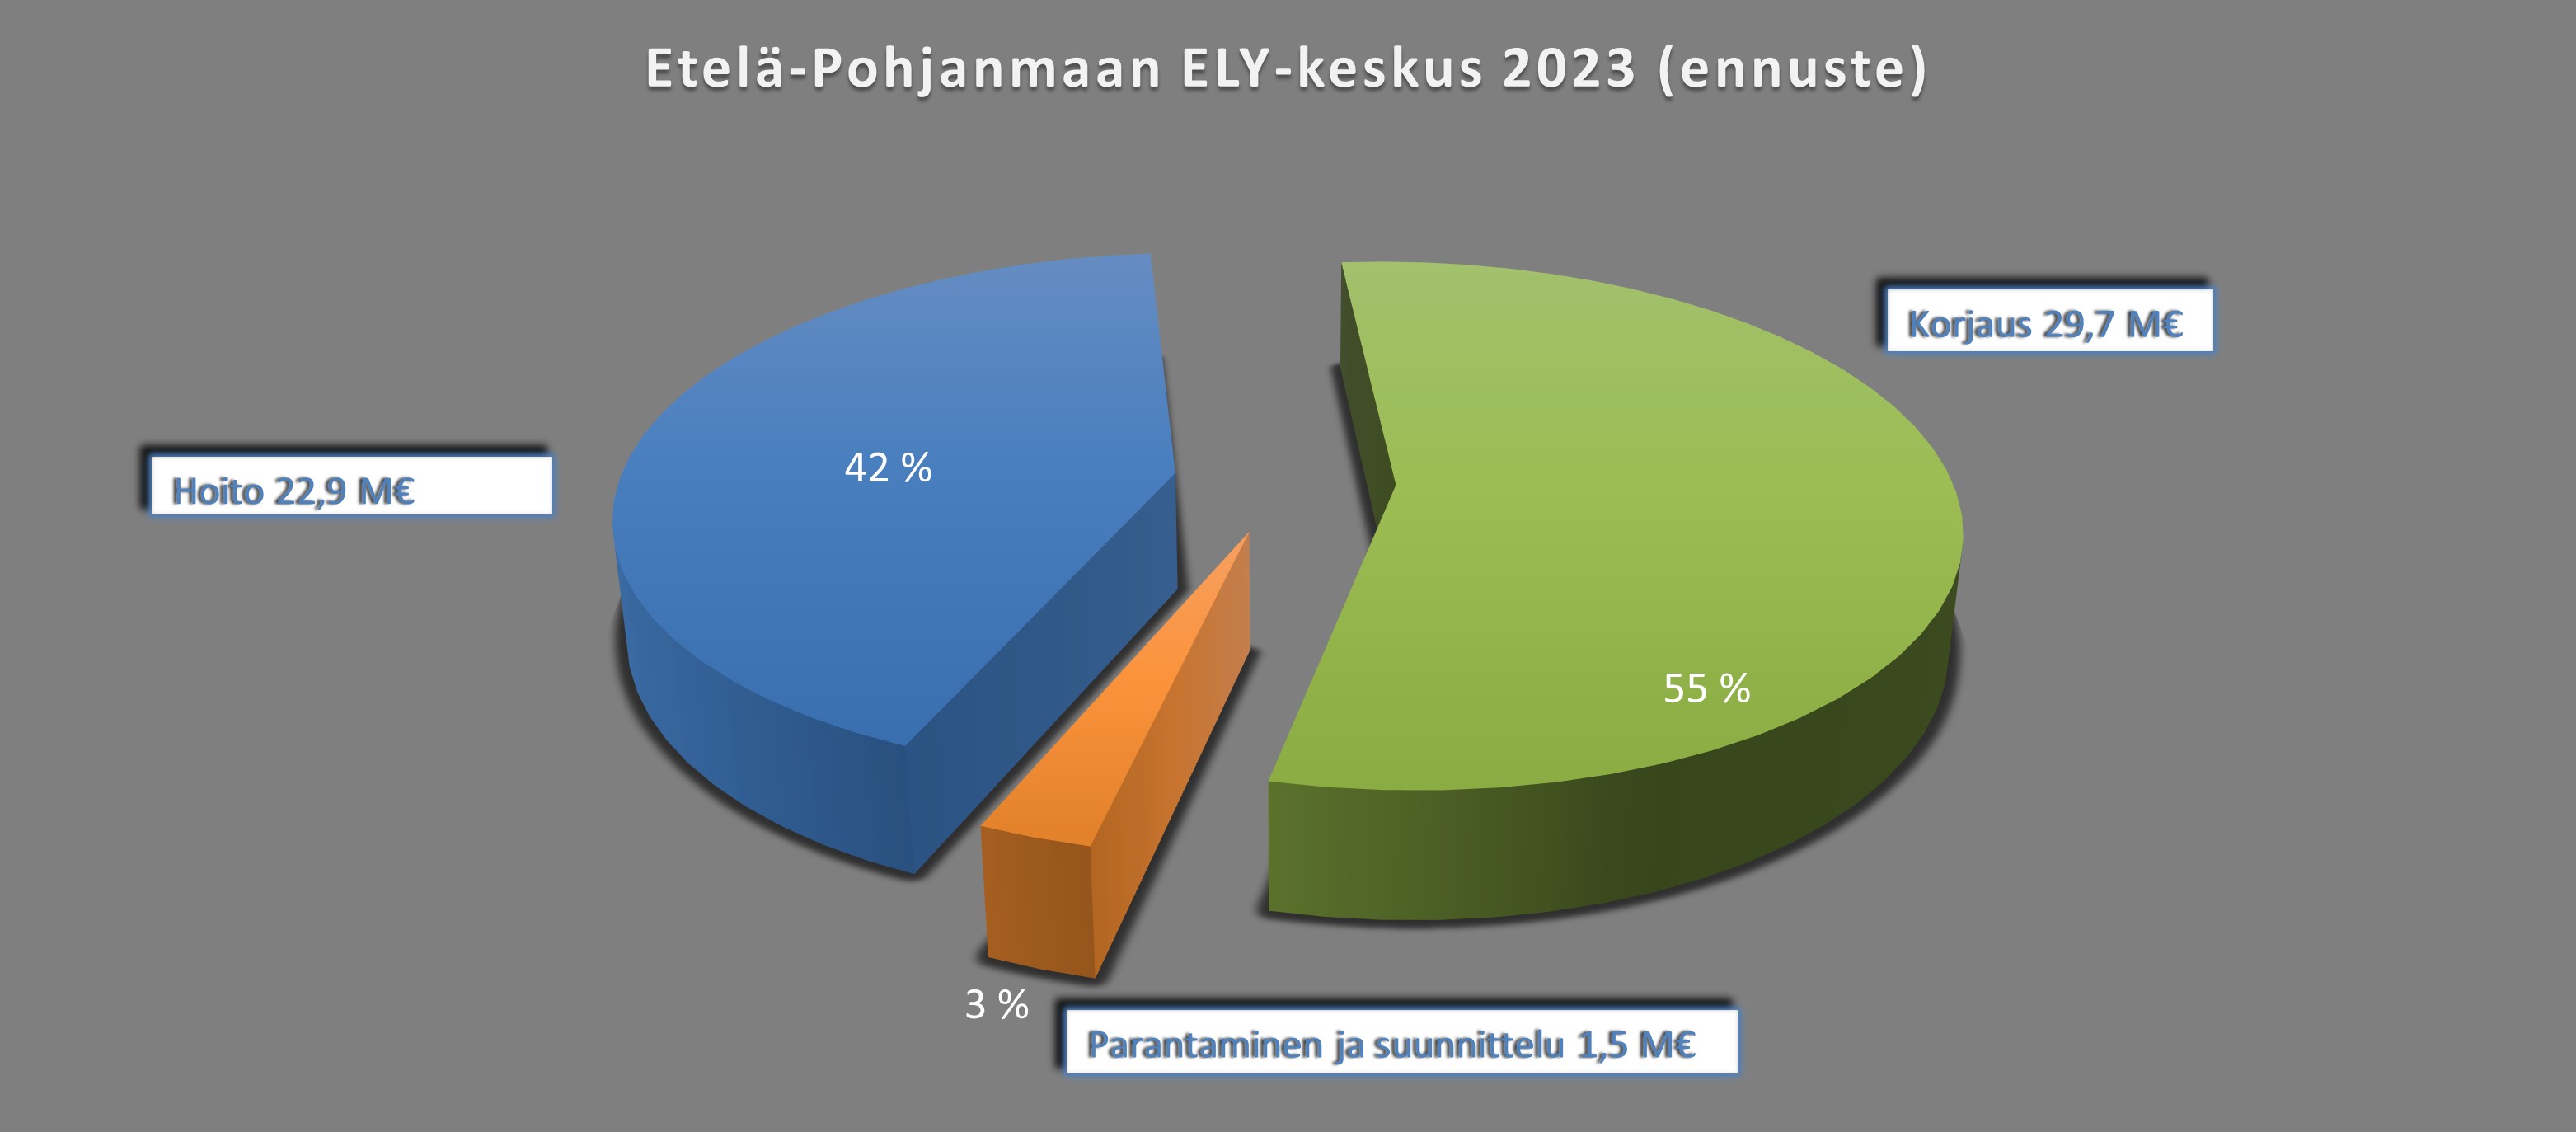 Kuva 9. Etelä-Pohjanmaan ELY-keskus, määrärahat vuonna 2023 (M€)